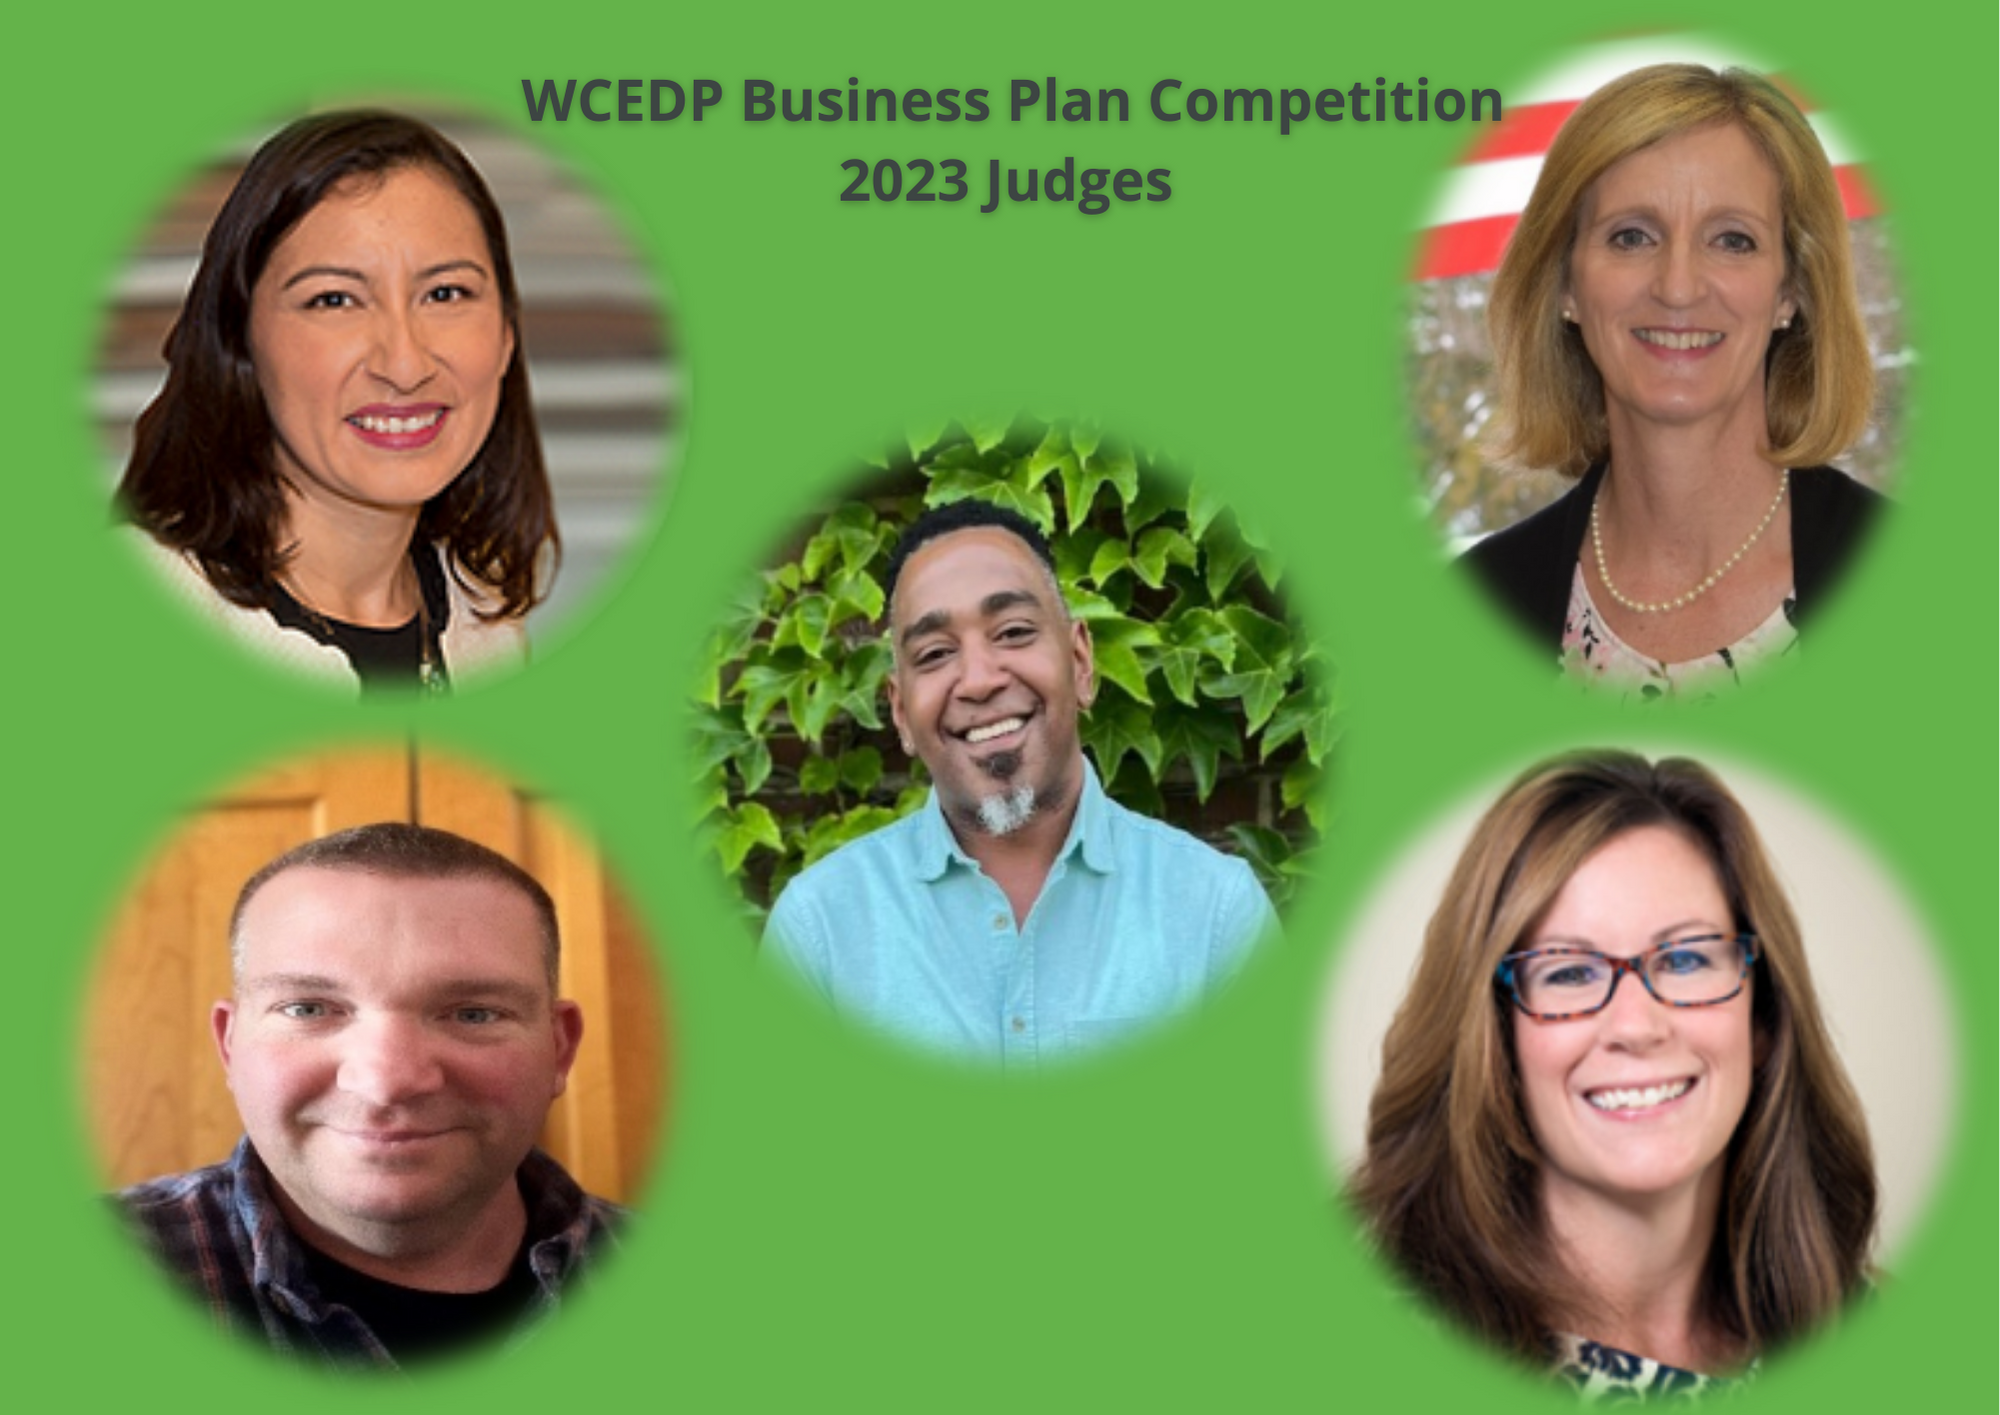 WCEDP Business Plan Competition 2023 Judges Announcement